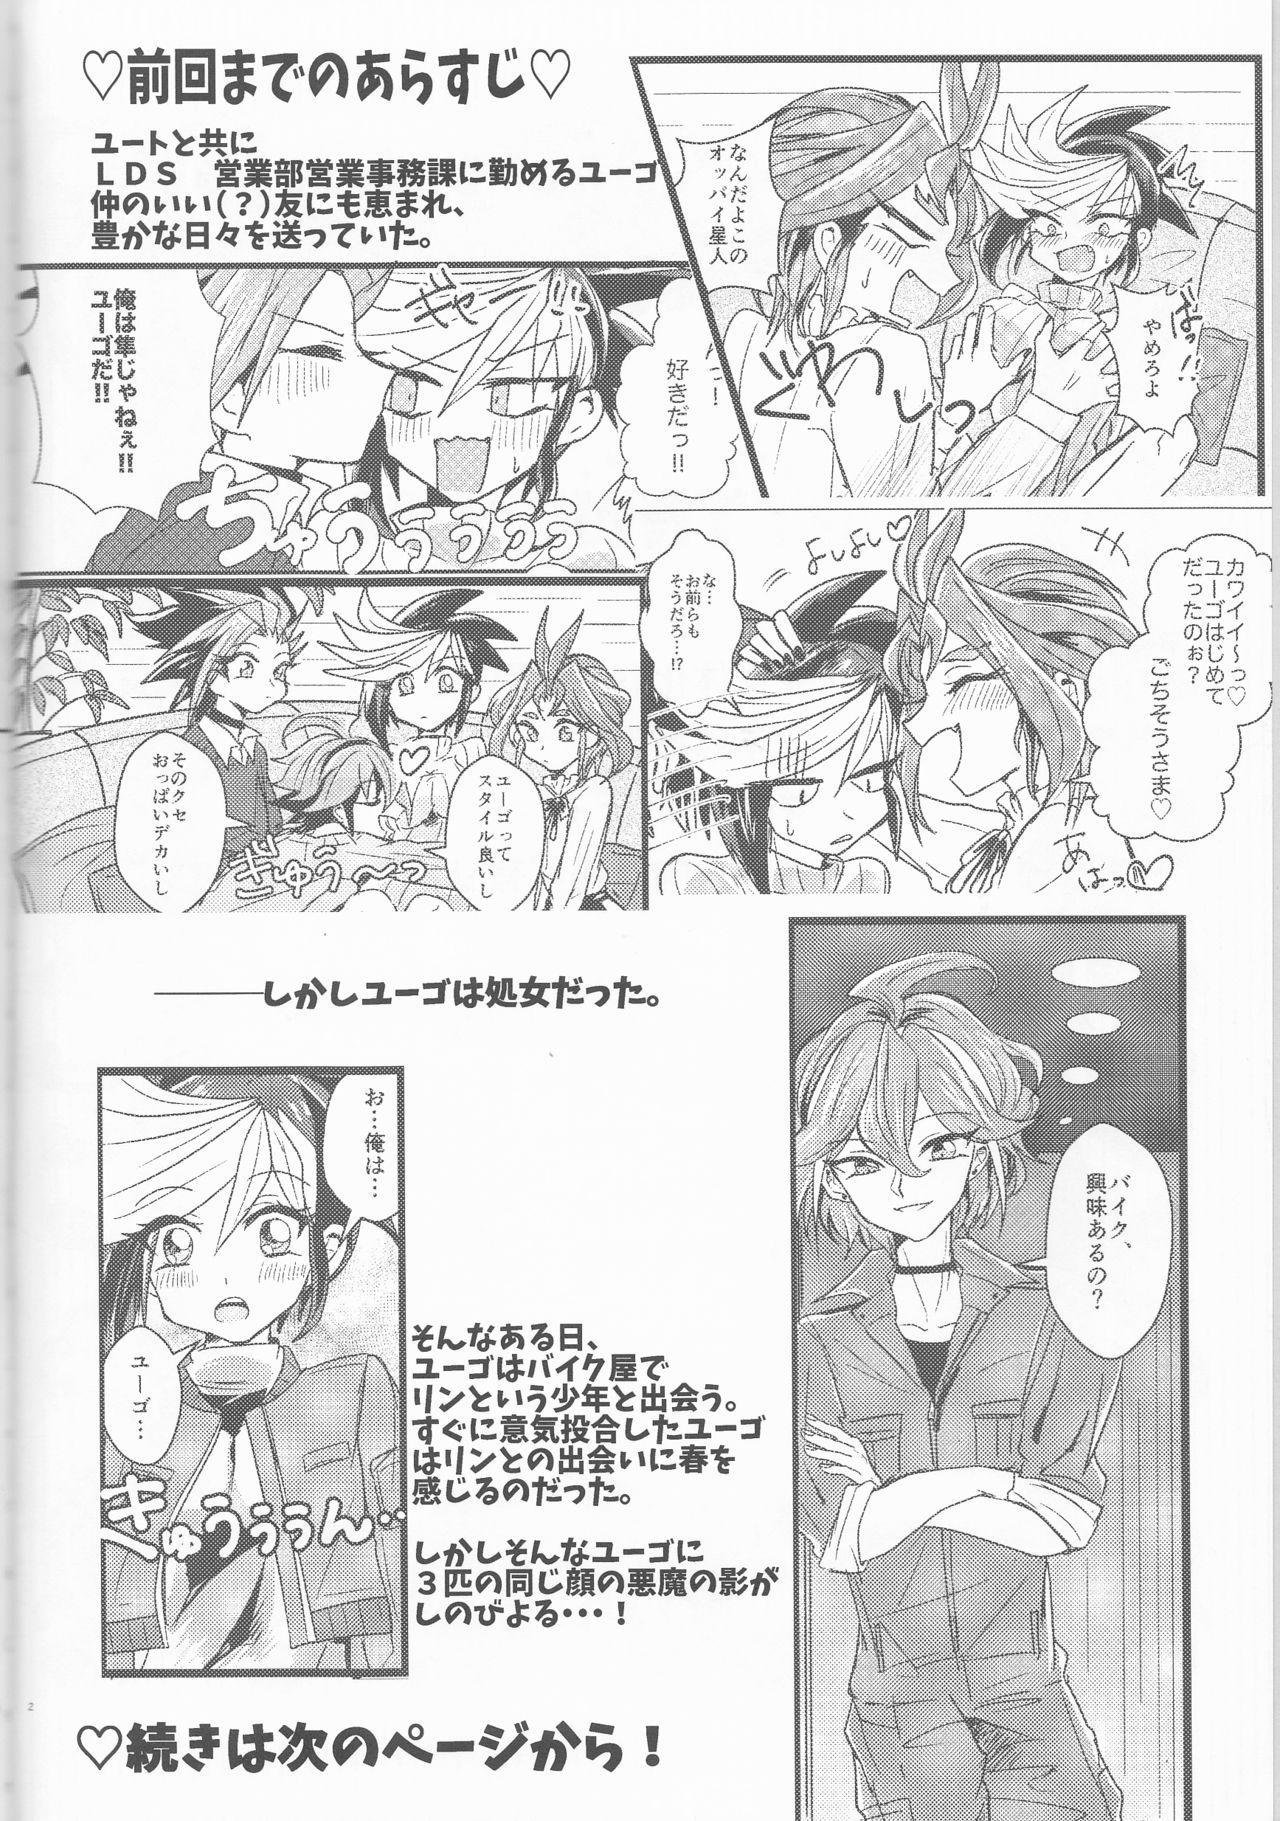 Amature Sex LDS Hishoka no Himitsu II - Yu-gi-oh arc-v Maid - Page 3